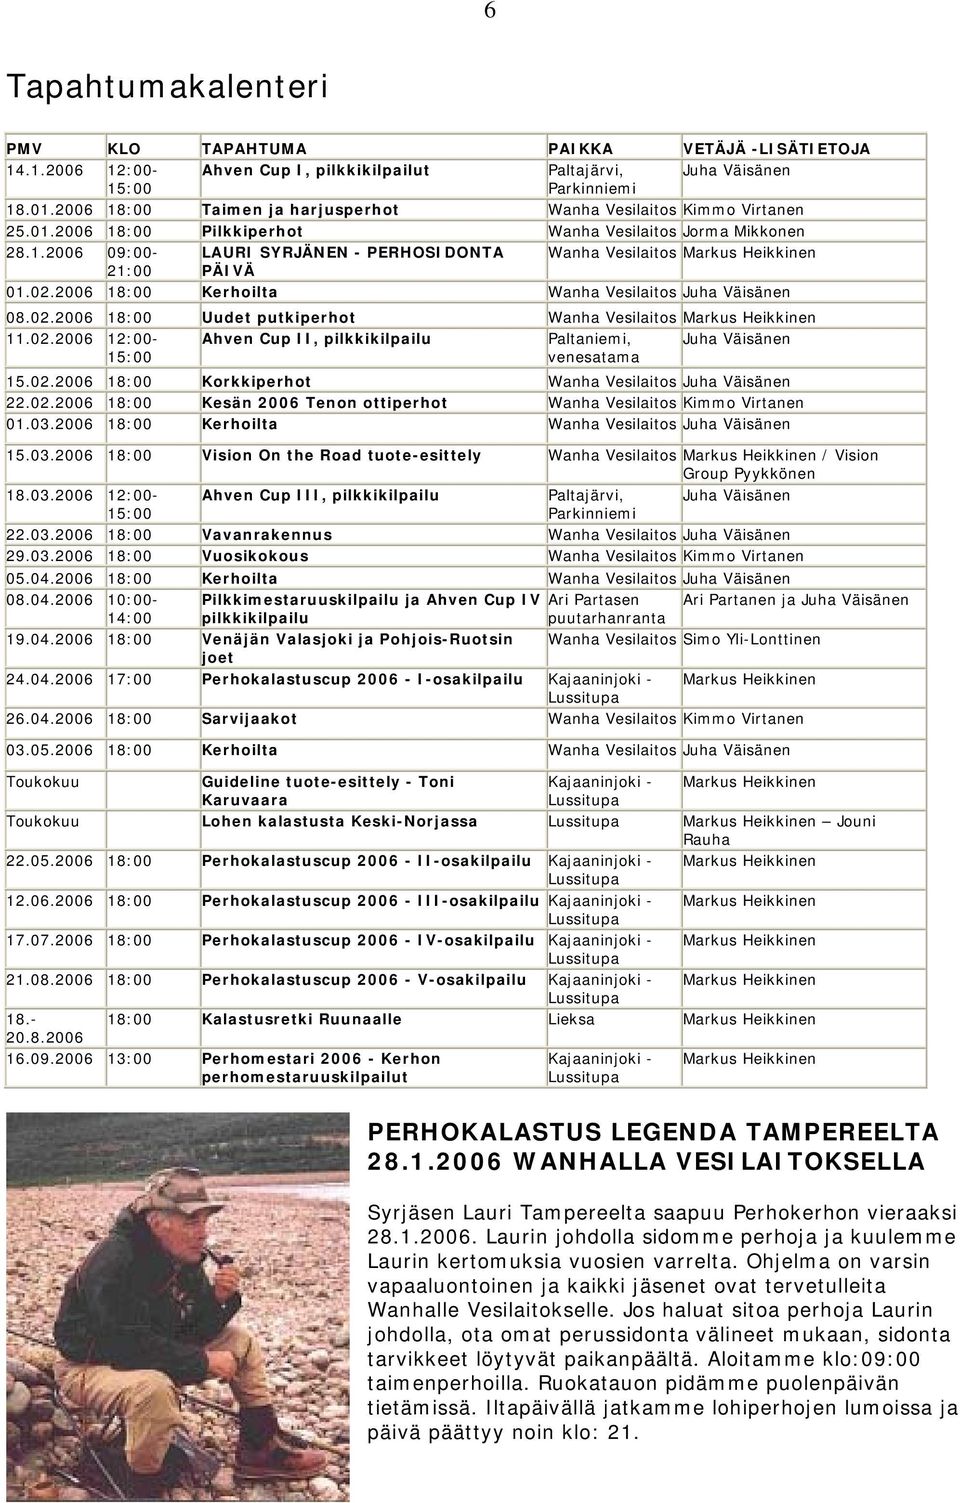 02.2006 18:00 Kerhoilta Wanha Vesilaitos Juha Väisänen 08.02.2006 18:00 Uudet putkiperhot Wanha Vesilaitos Markus Heikkinen 11.02.2006 12:00- Ahven Cup II, pilkkikilpailu Paltaniemi, Juha Väisänen 15:00 venesatama 15.